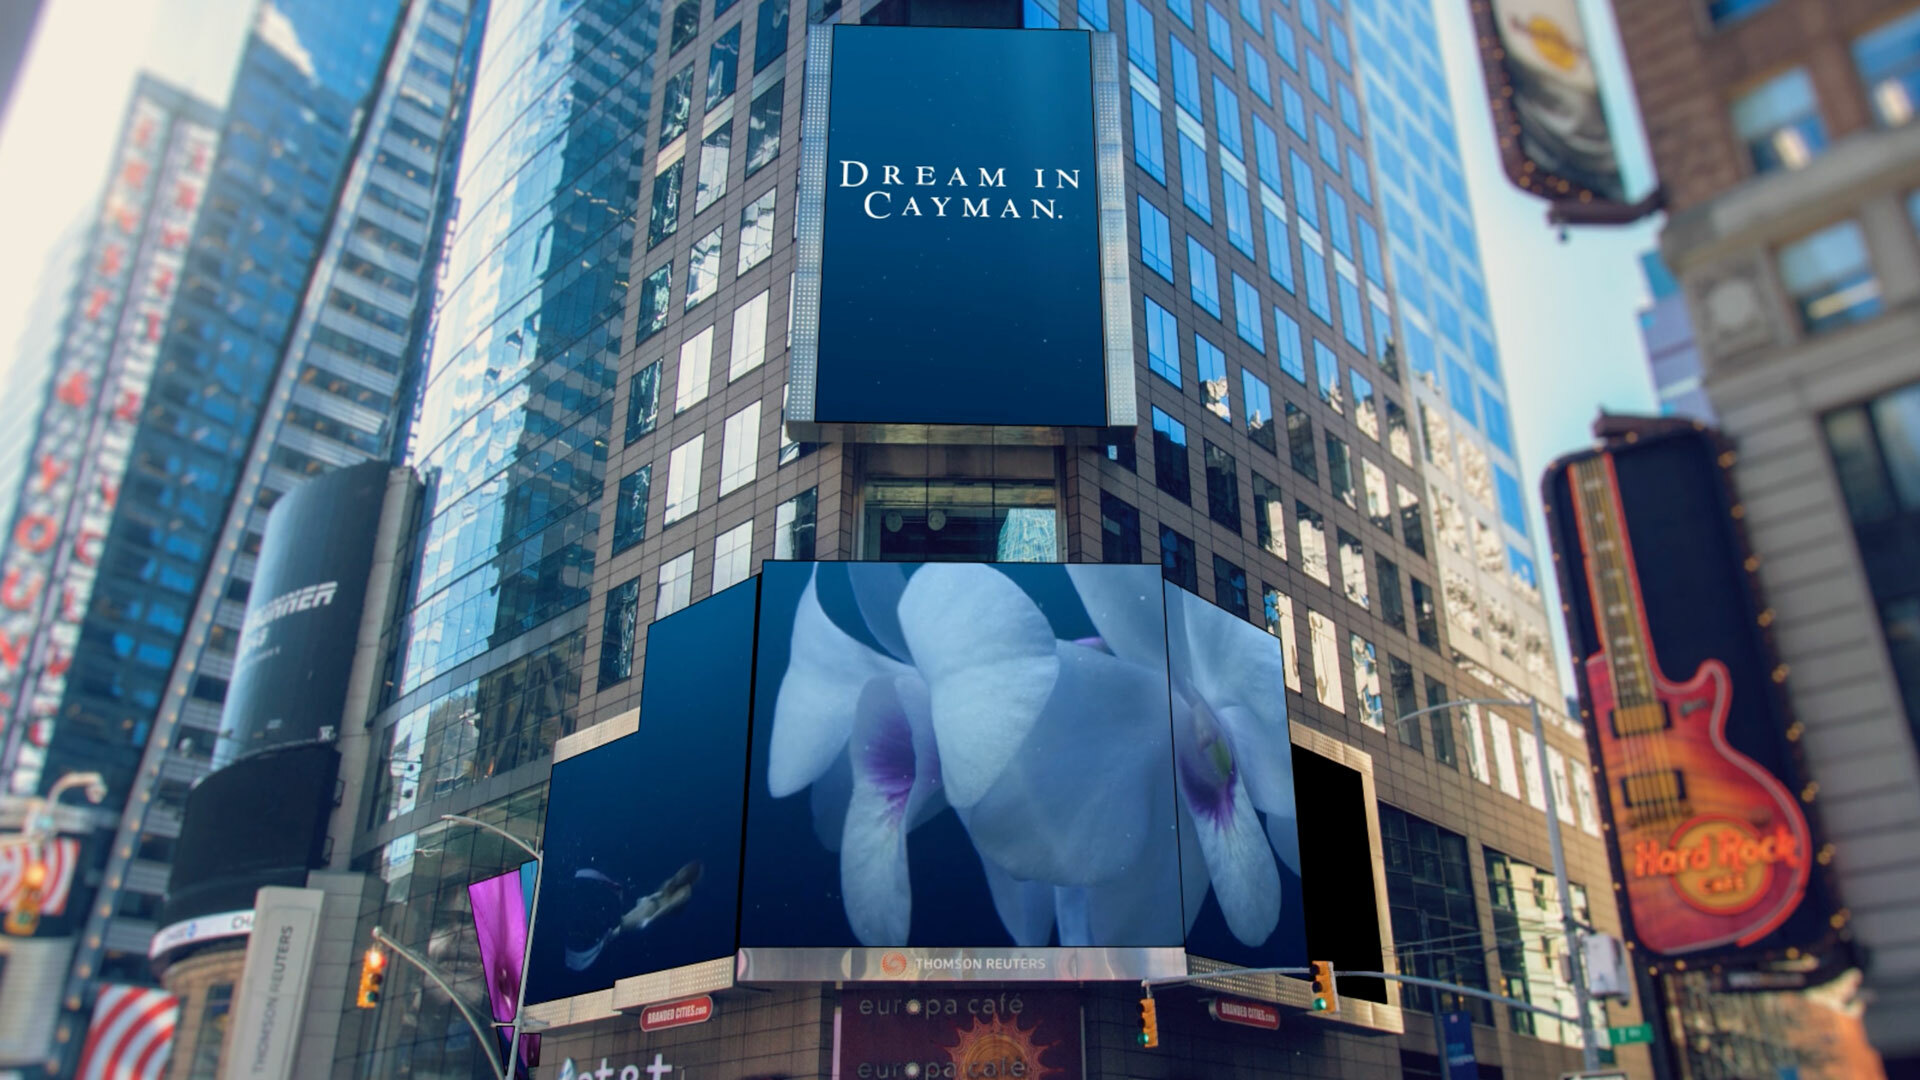 Cayman Times Square Billboard